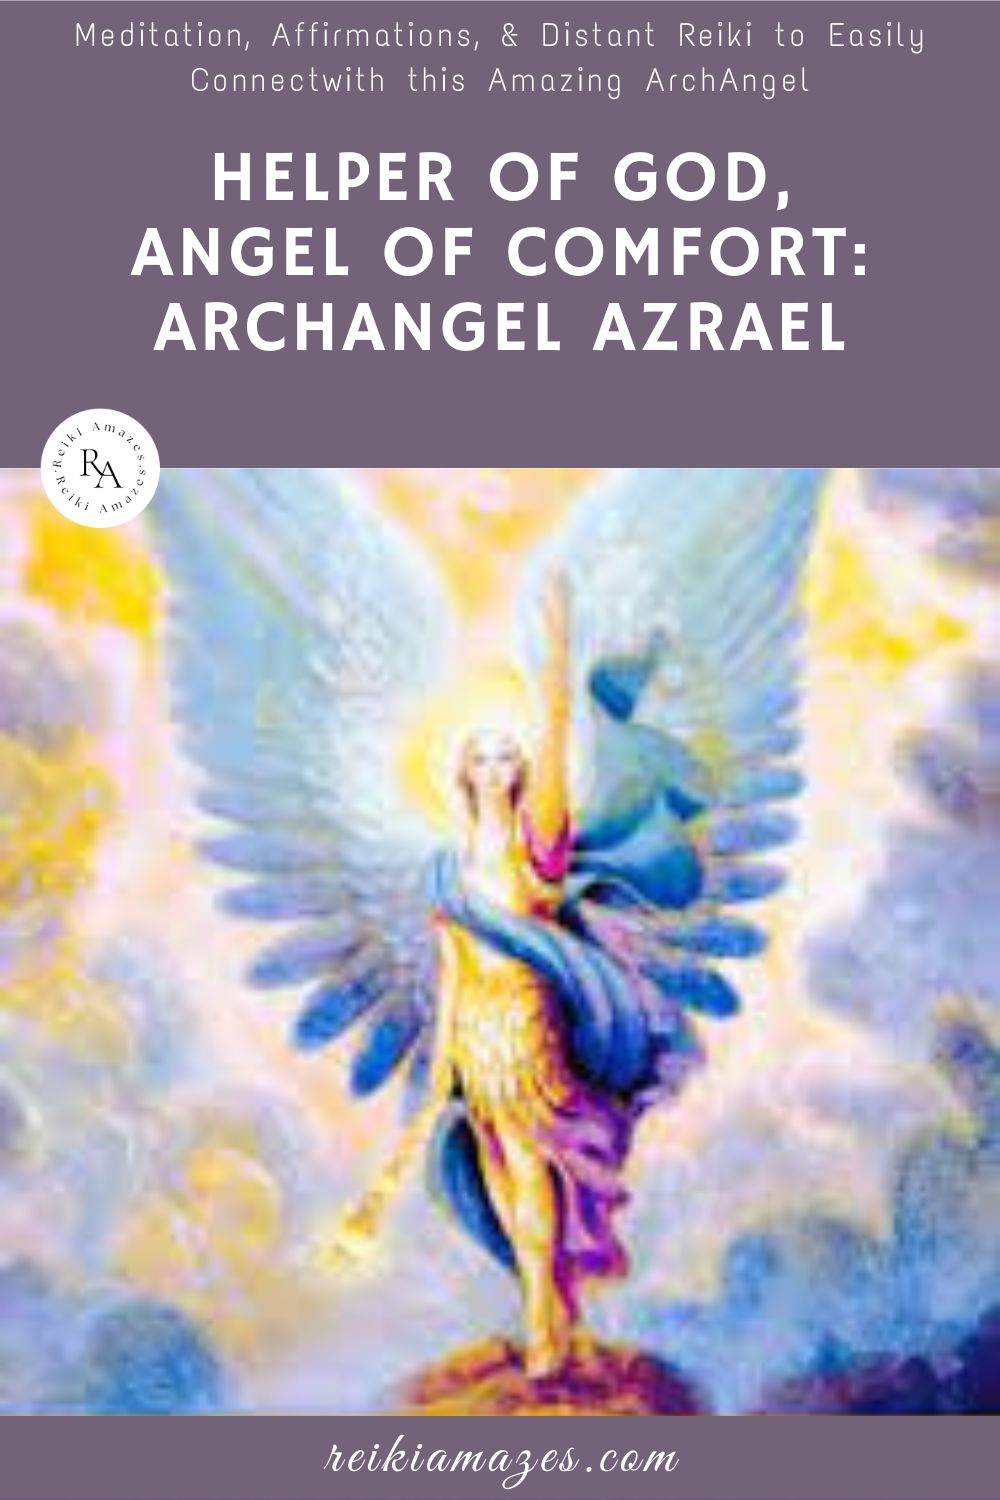 Helper of God, Angel of Comfort, Archangel Azrael